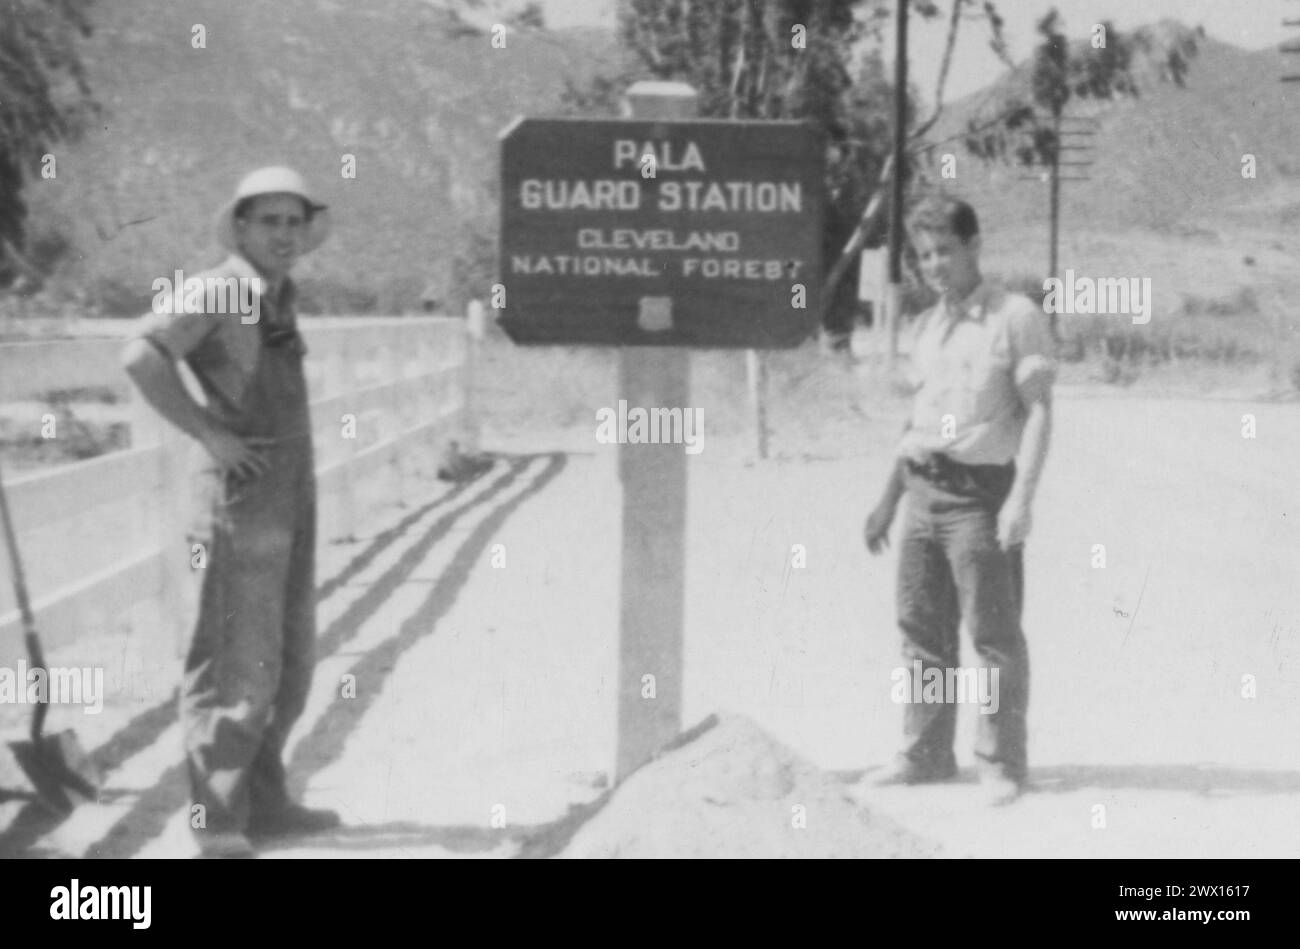 Bande Pala des Indiens de mission : photographie de deux hommes à côté de la station de garde Pala panneau pour la forêt nationale de Cleveland CA. 1936-1942 Banque D'Images